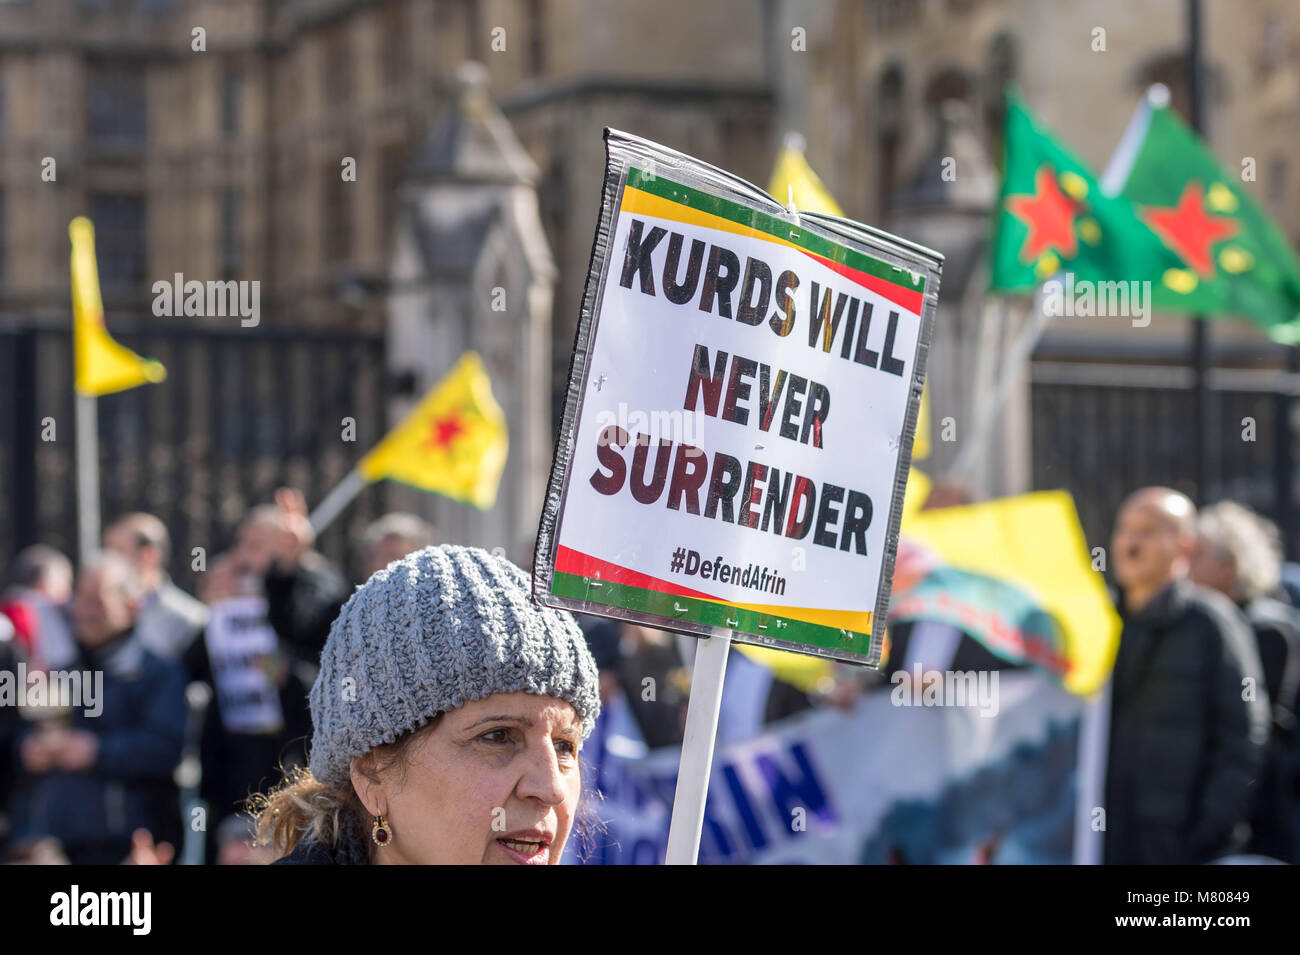 Londres, Royaume-Uni. 14 mars 2018, les militants kurdes Parlement bloc rue devant la Chambre des communes pour protester contre l'agression turque Crédit : Ian Davidson/Alamy Live News Banque D'Images